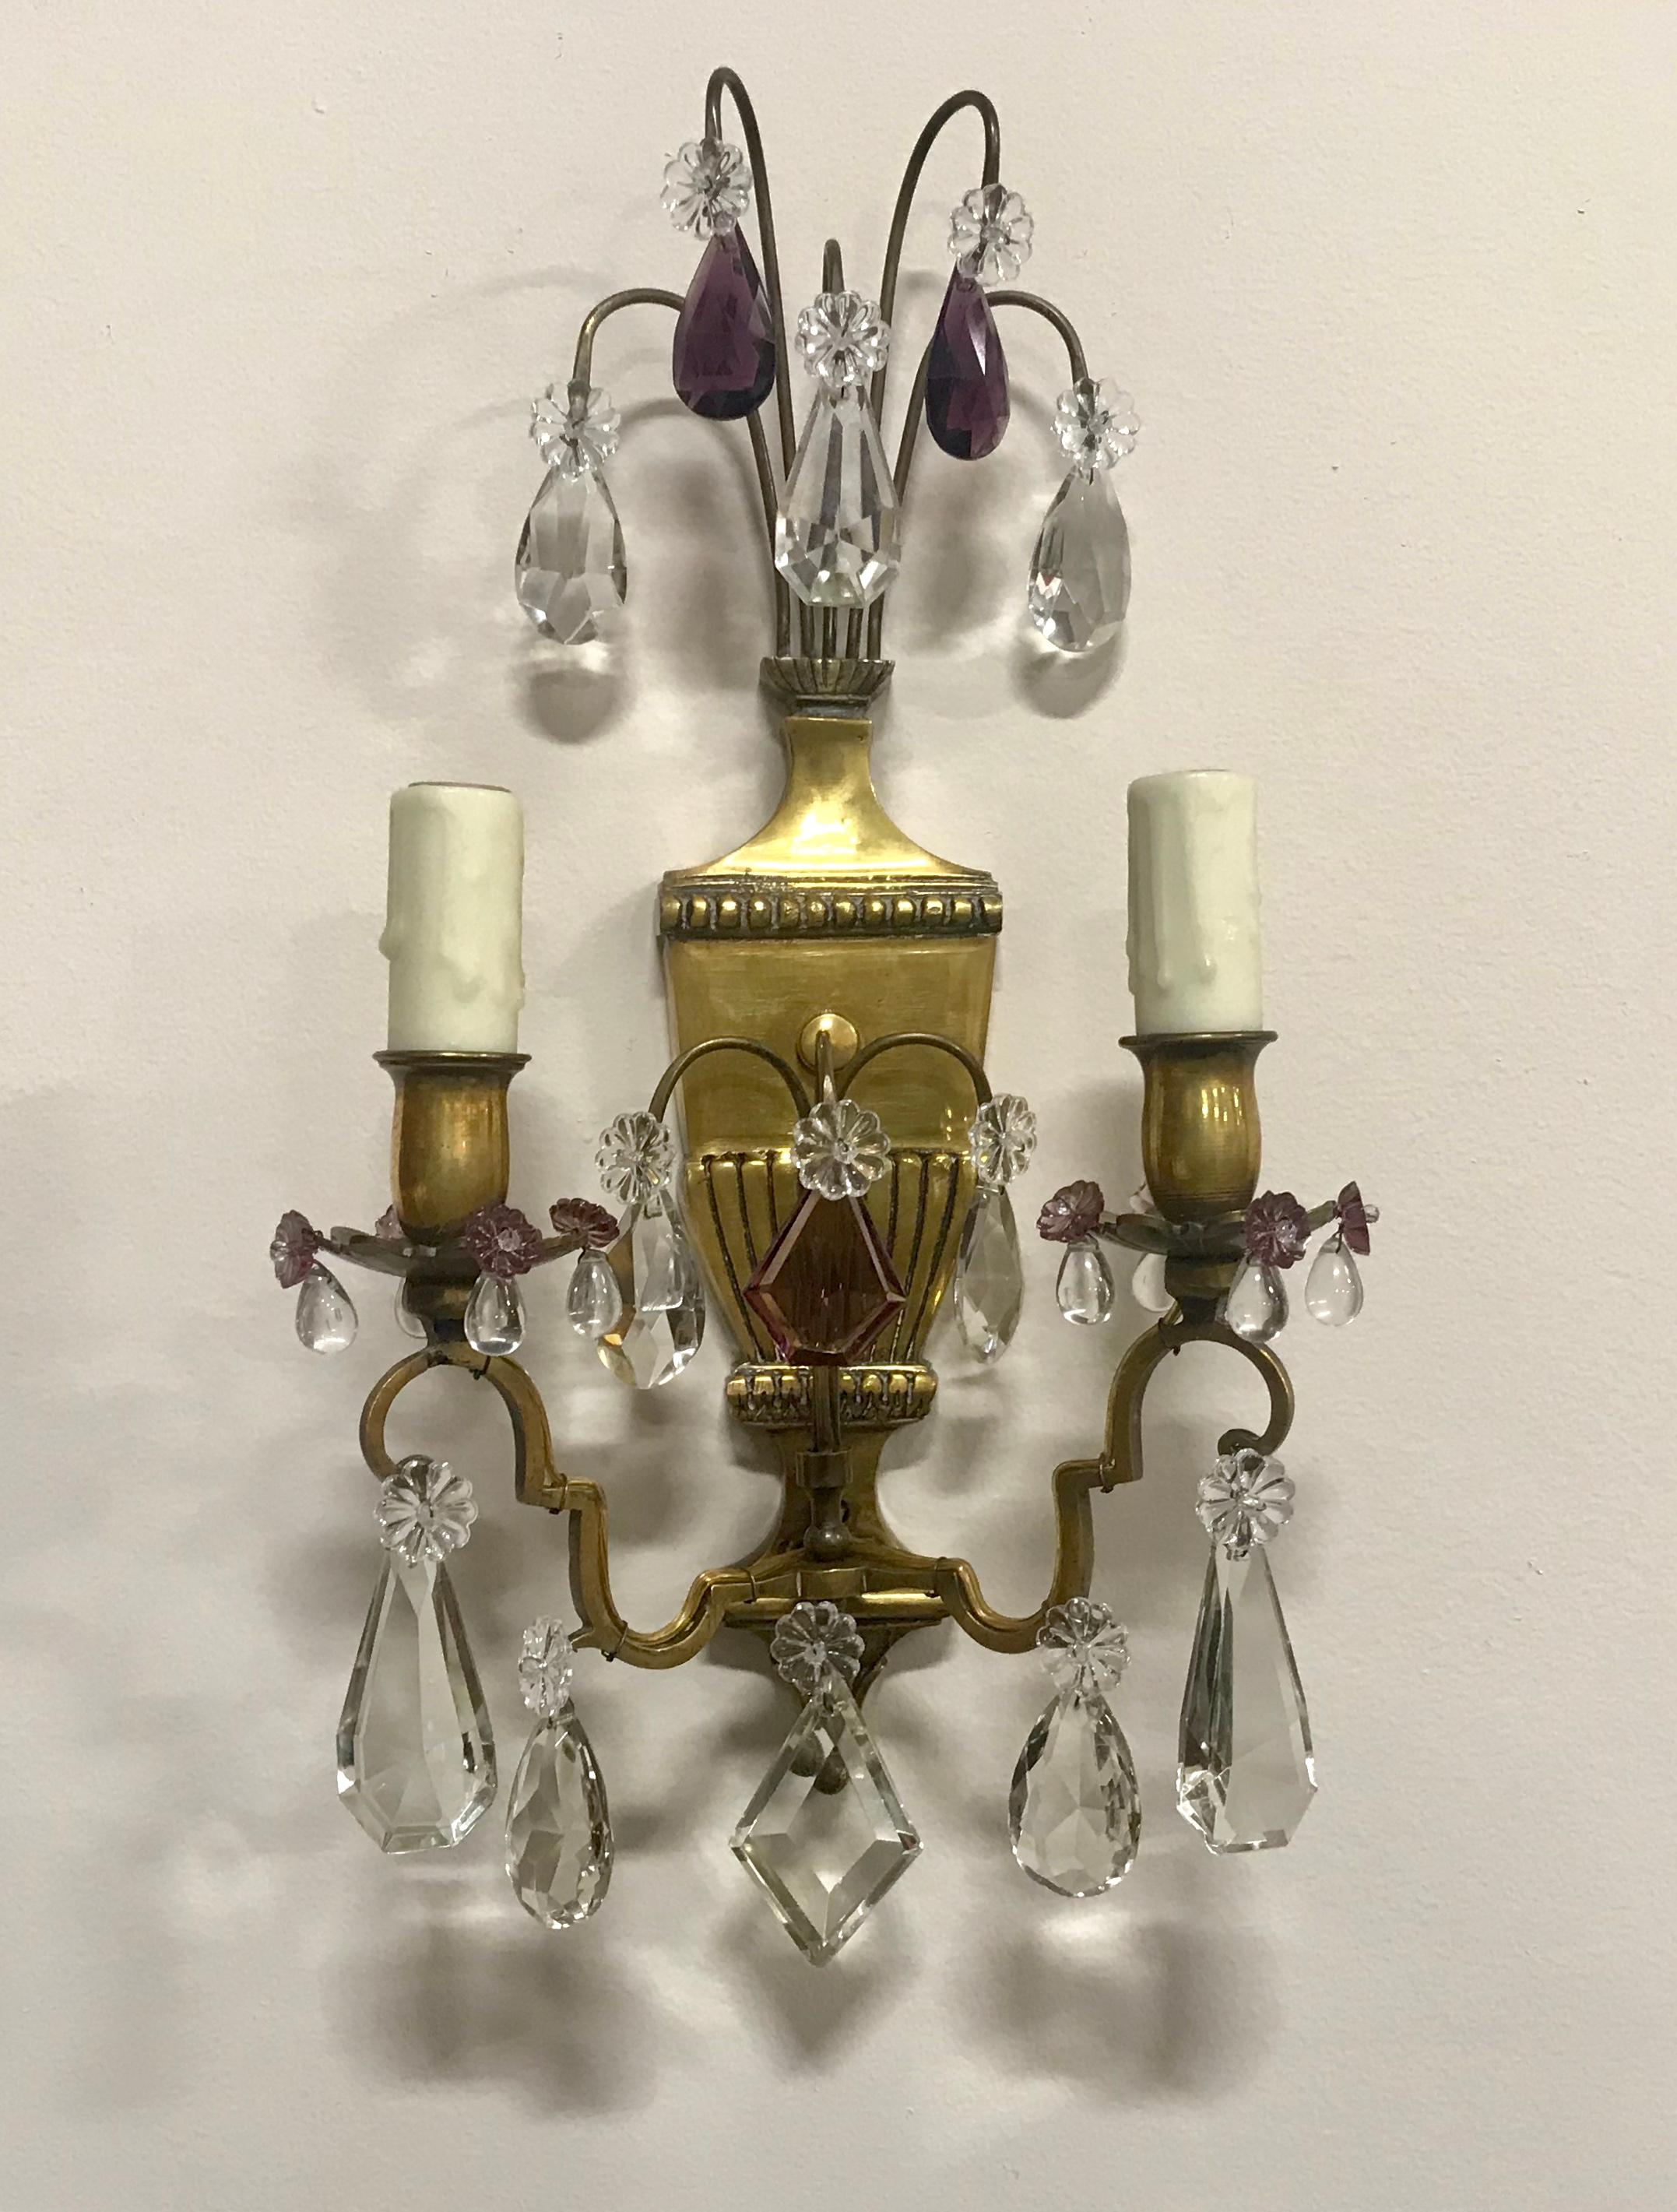 Wunderschöne französische Messing- und Kristallleuchten aus den 1940er Jahren im neoklassischen Stil. Die urnenförmigen Leuchter aus Messing sind mit einer Auswahl an Kristallprismen in verschiedenen Formen und Größen verziert, darunter auch einige